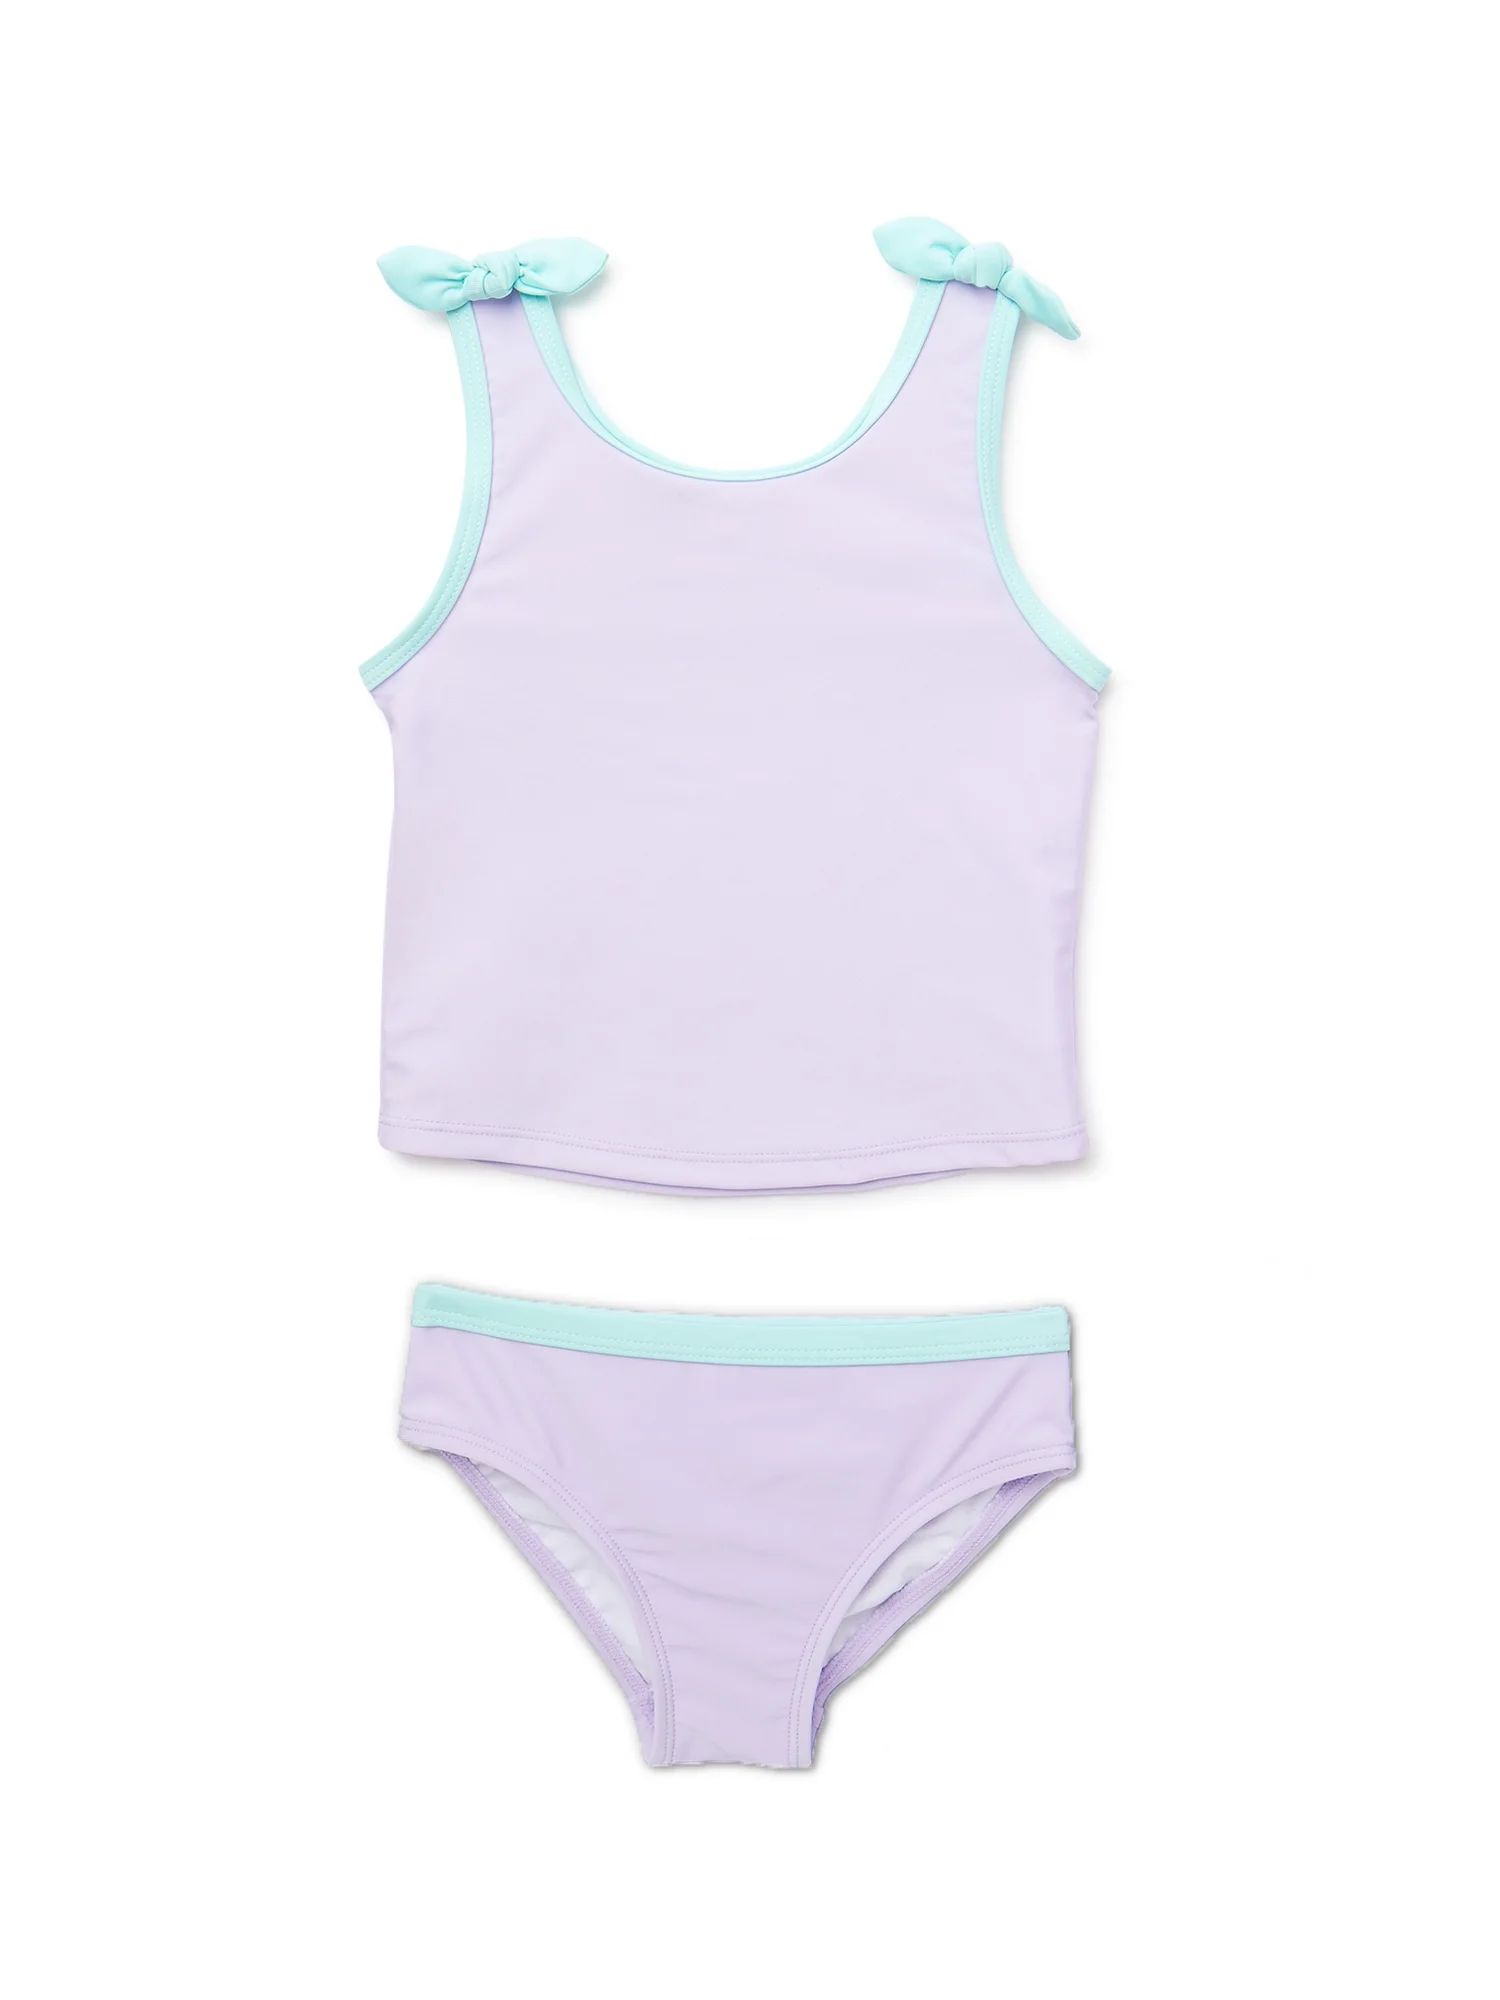 Wonder Nation Toddler Girl Tankini Swimsuit, Sizes 12M-5T | Walmart (US)